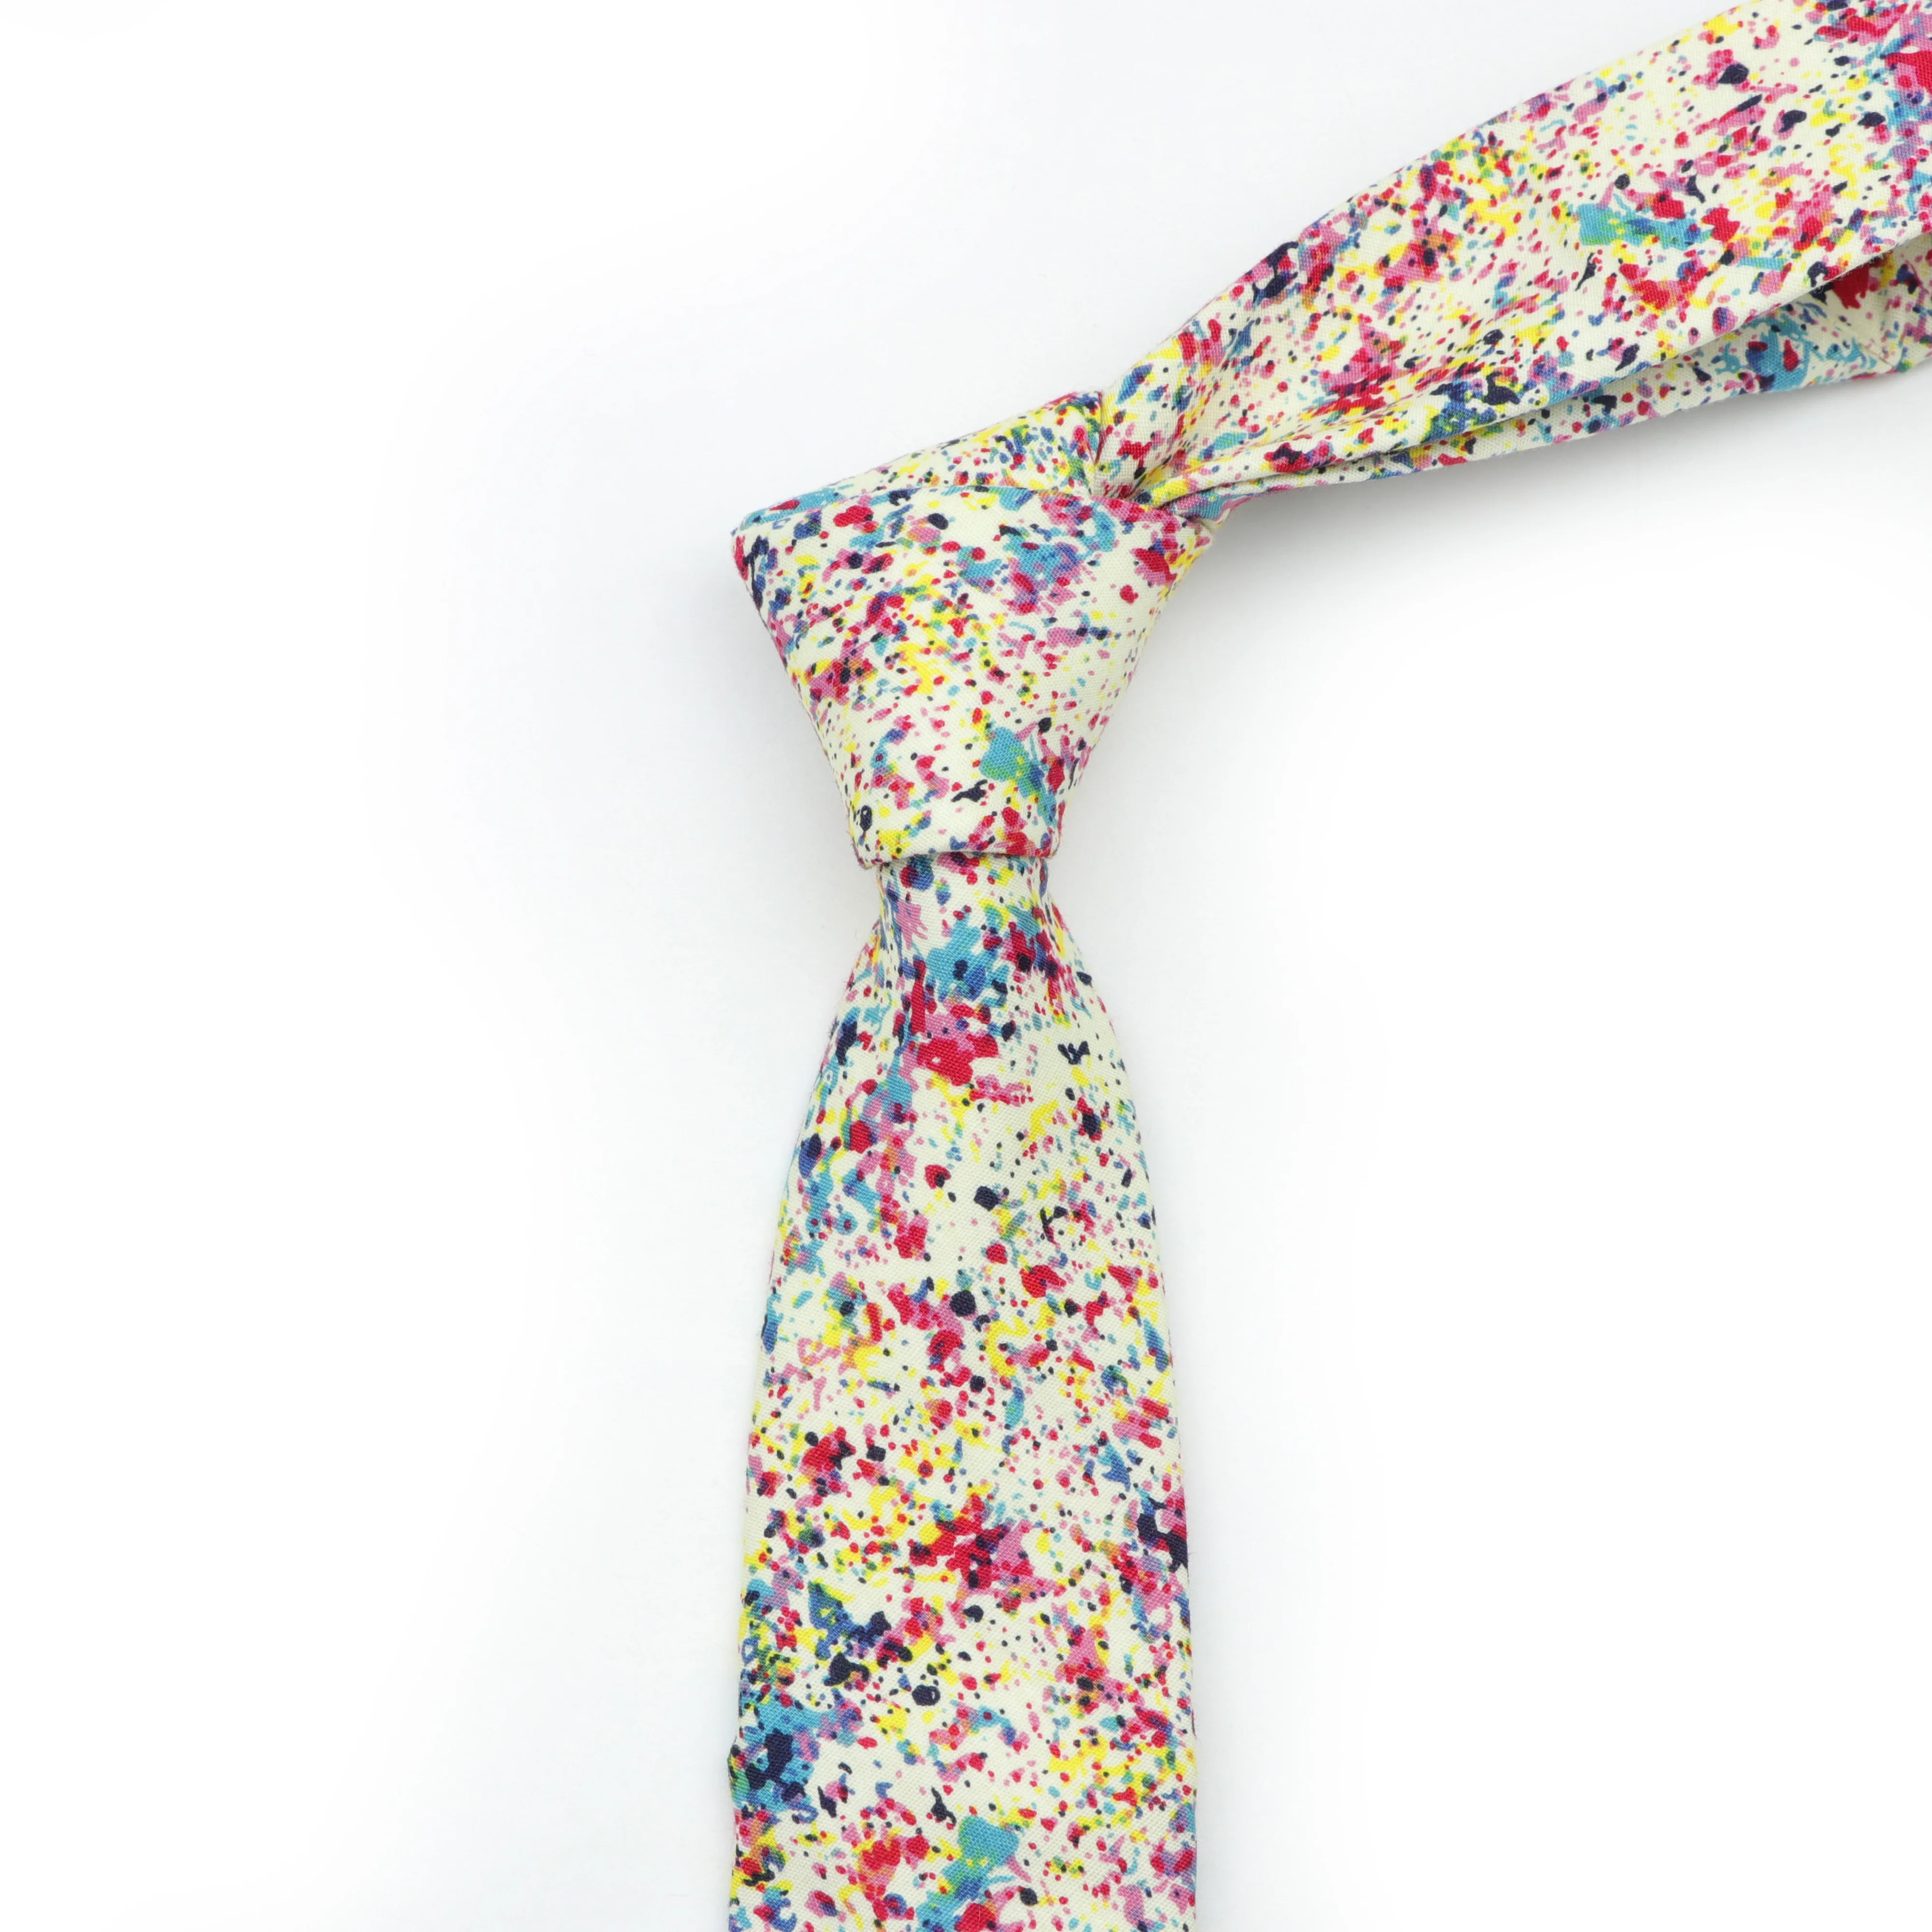 Хлопковый галстук с цветами мужской галстук с цветными цветами узкий галстук с пейсли узкий толстый галстук